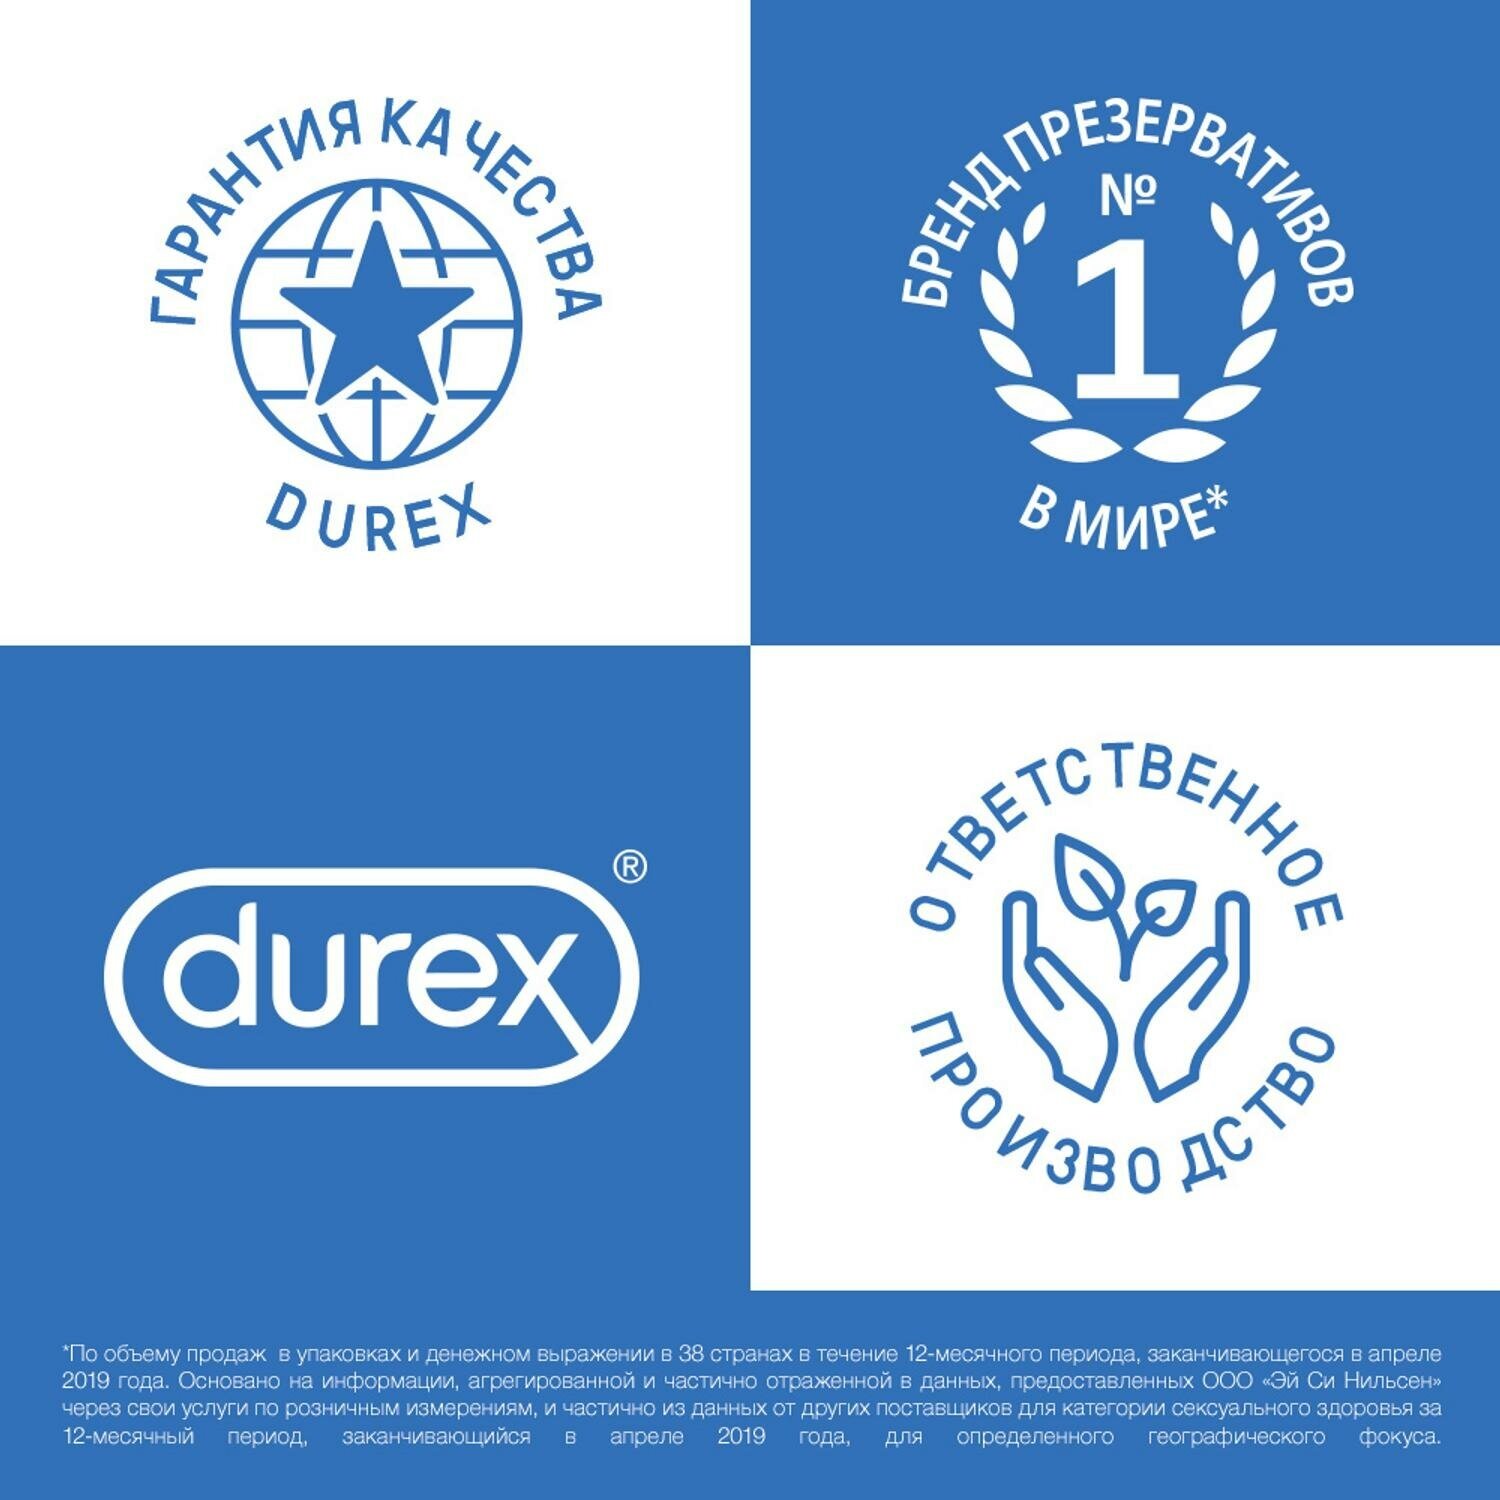 Презервативы Durex (Дюрекс) с анестетиком Infinity гладкие, вариант 2, 12 шт. Рекитт Бенкизер Хелскэар (ЮК) Лтд - фото №3